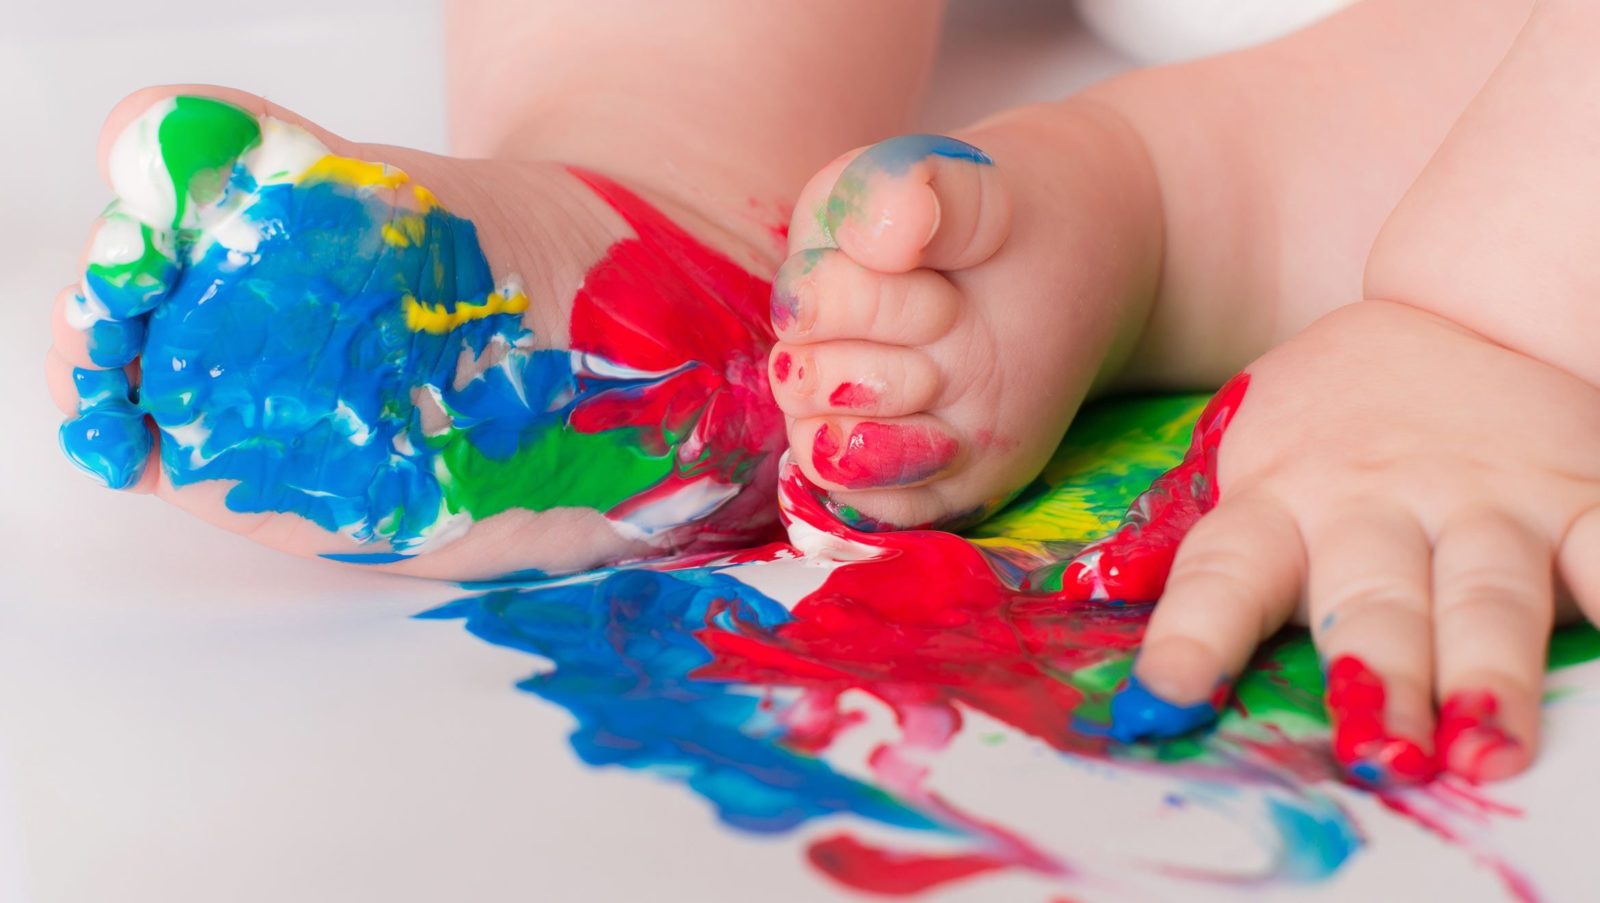 La Peinture Activites Pour Enfants De 0 A 18 Mois Bebe M